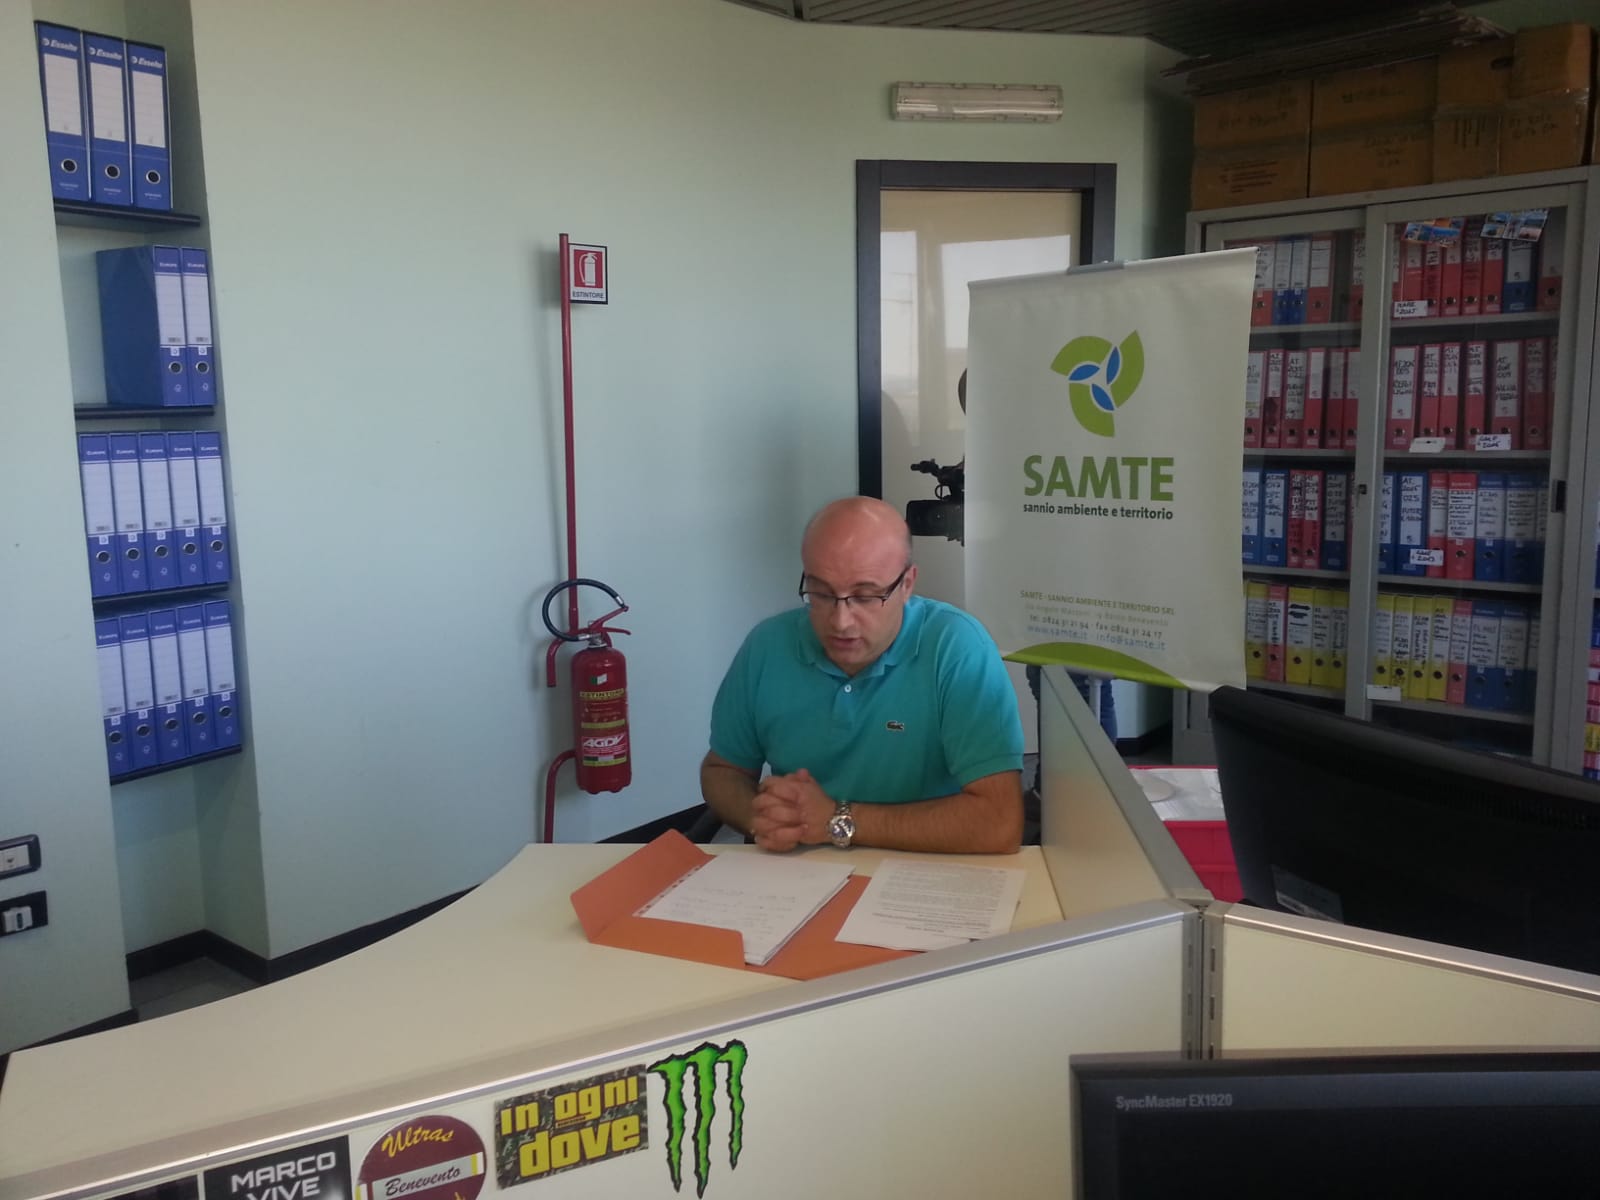 Benevento| Samte, l’Amministratore Unico Solano si dimette